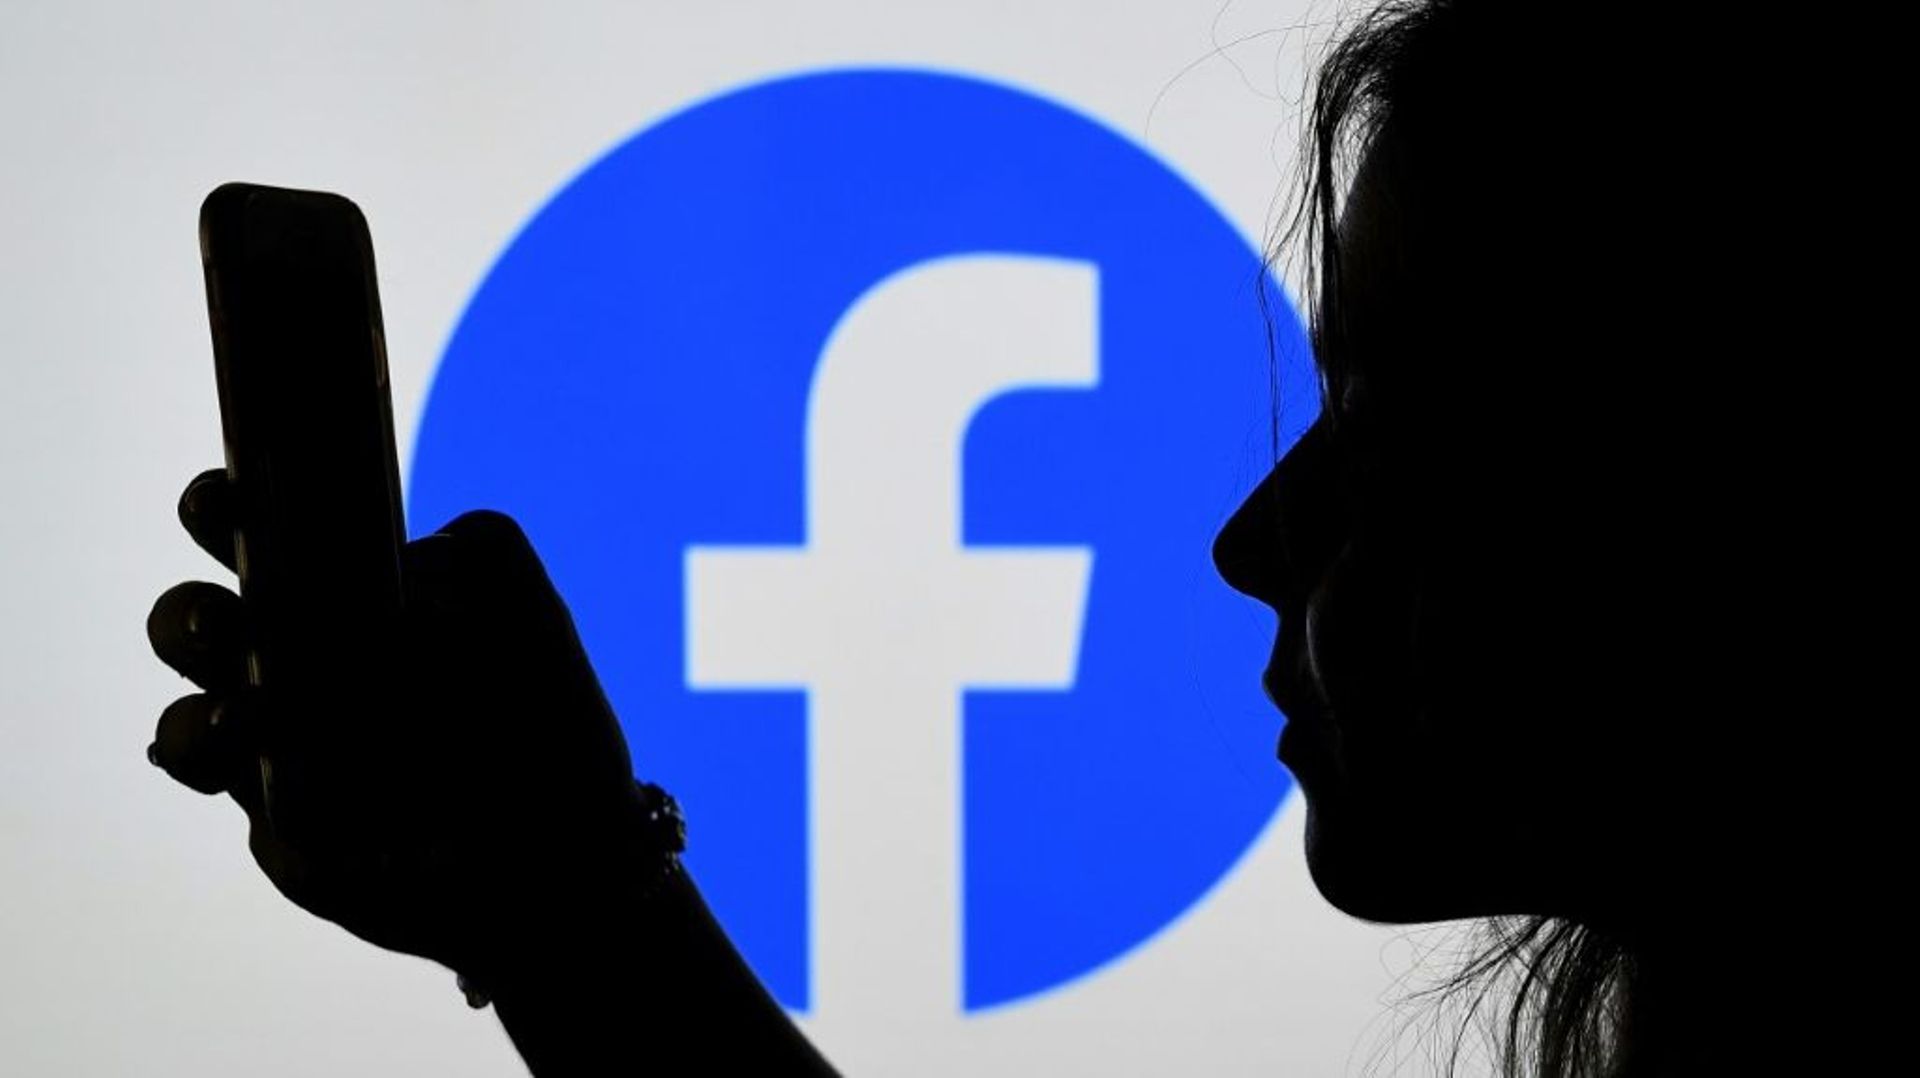 Facebook veut embaucher 10.000 personnes en Europe pour travailler sur le "métavers", une sorte de doublure numérique du monde physique, accessible via internet 